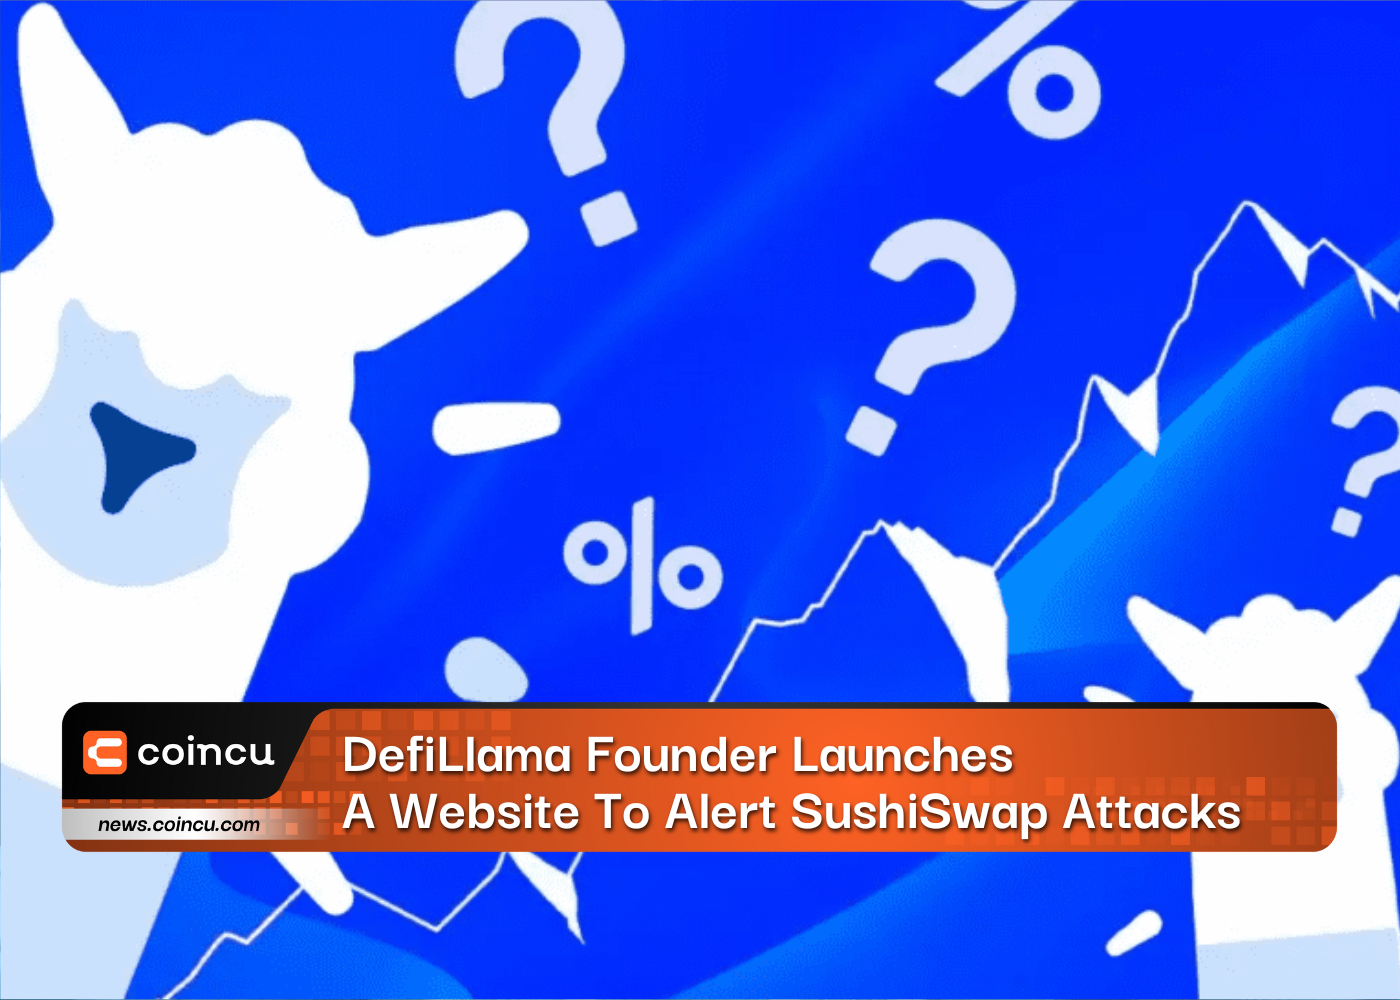 Der Gründer von DefiLlama startet eine Website, um vor SushiSwap-Angriffen zu warnen